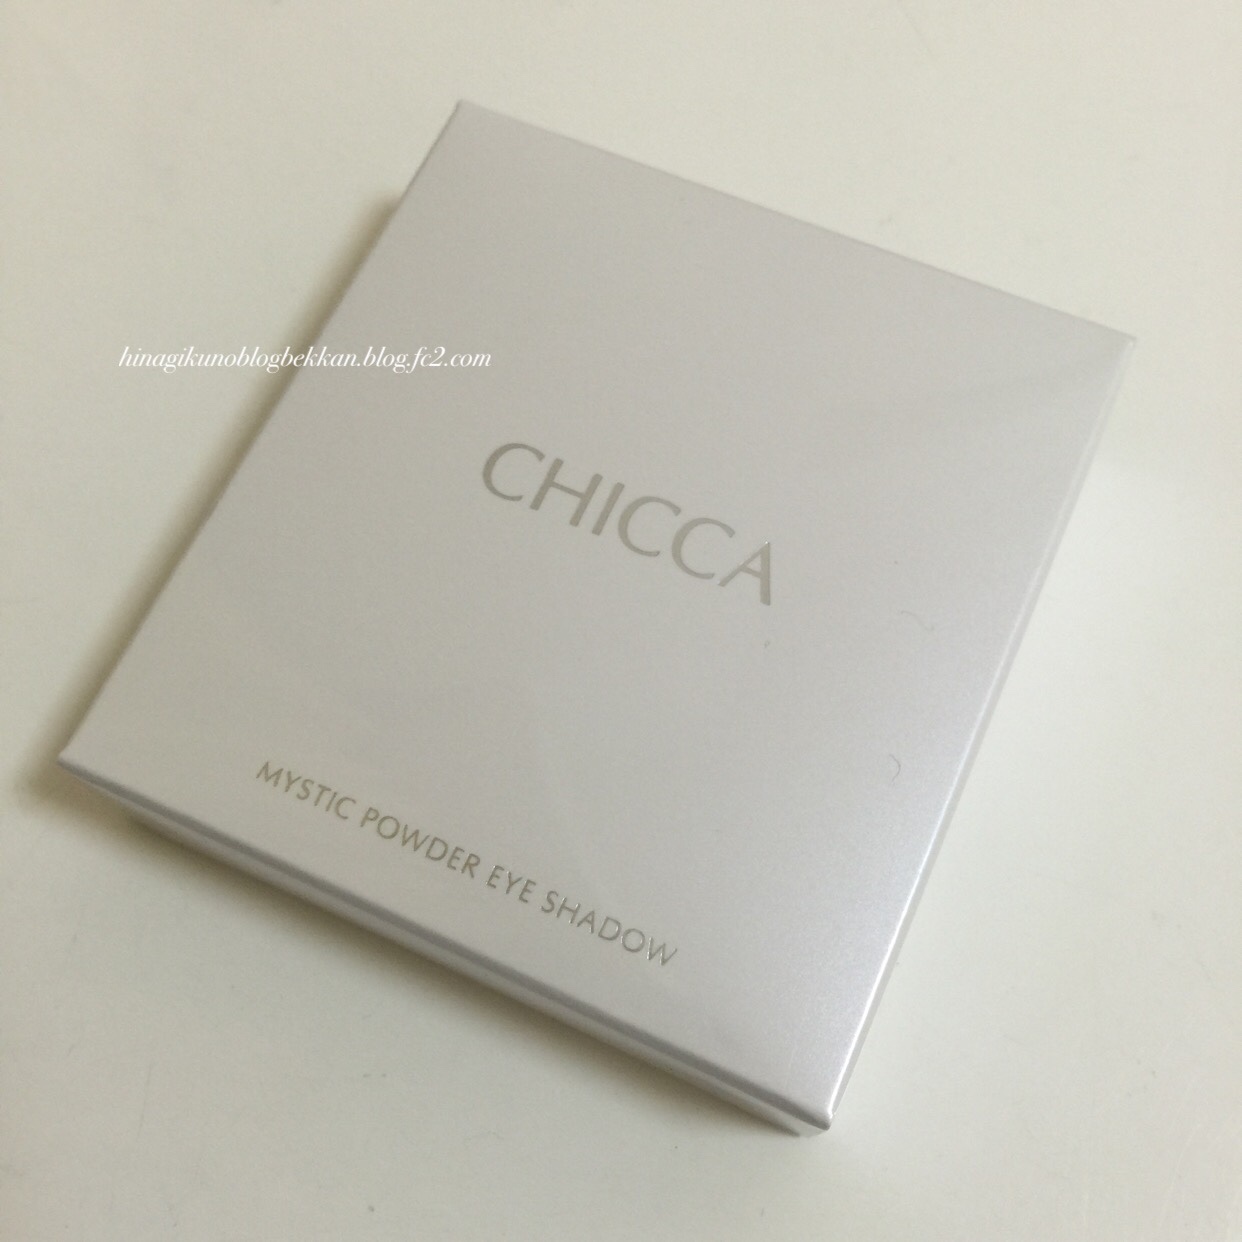 CHICCA(キッカ) ミスティック パウダーアイシャドウ | Hinagikuのブログ